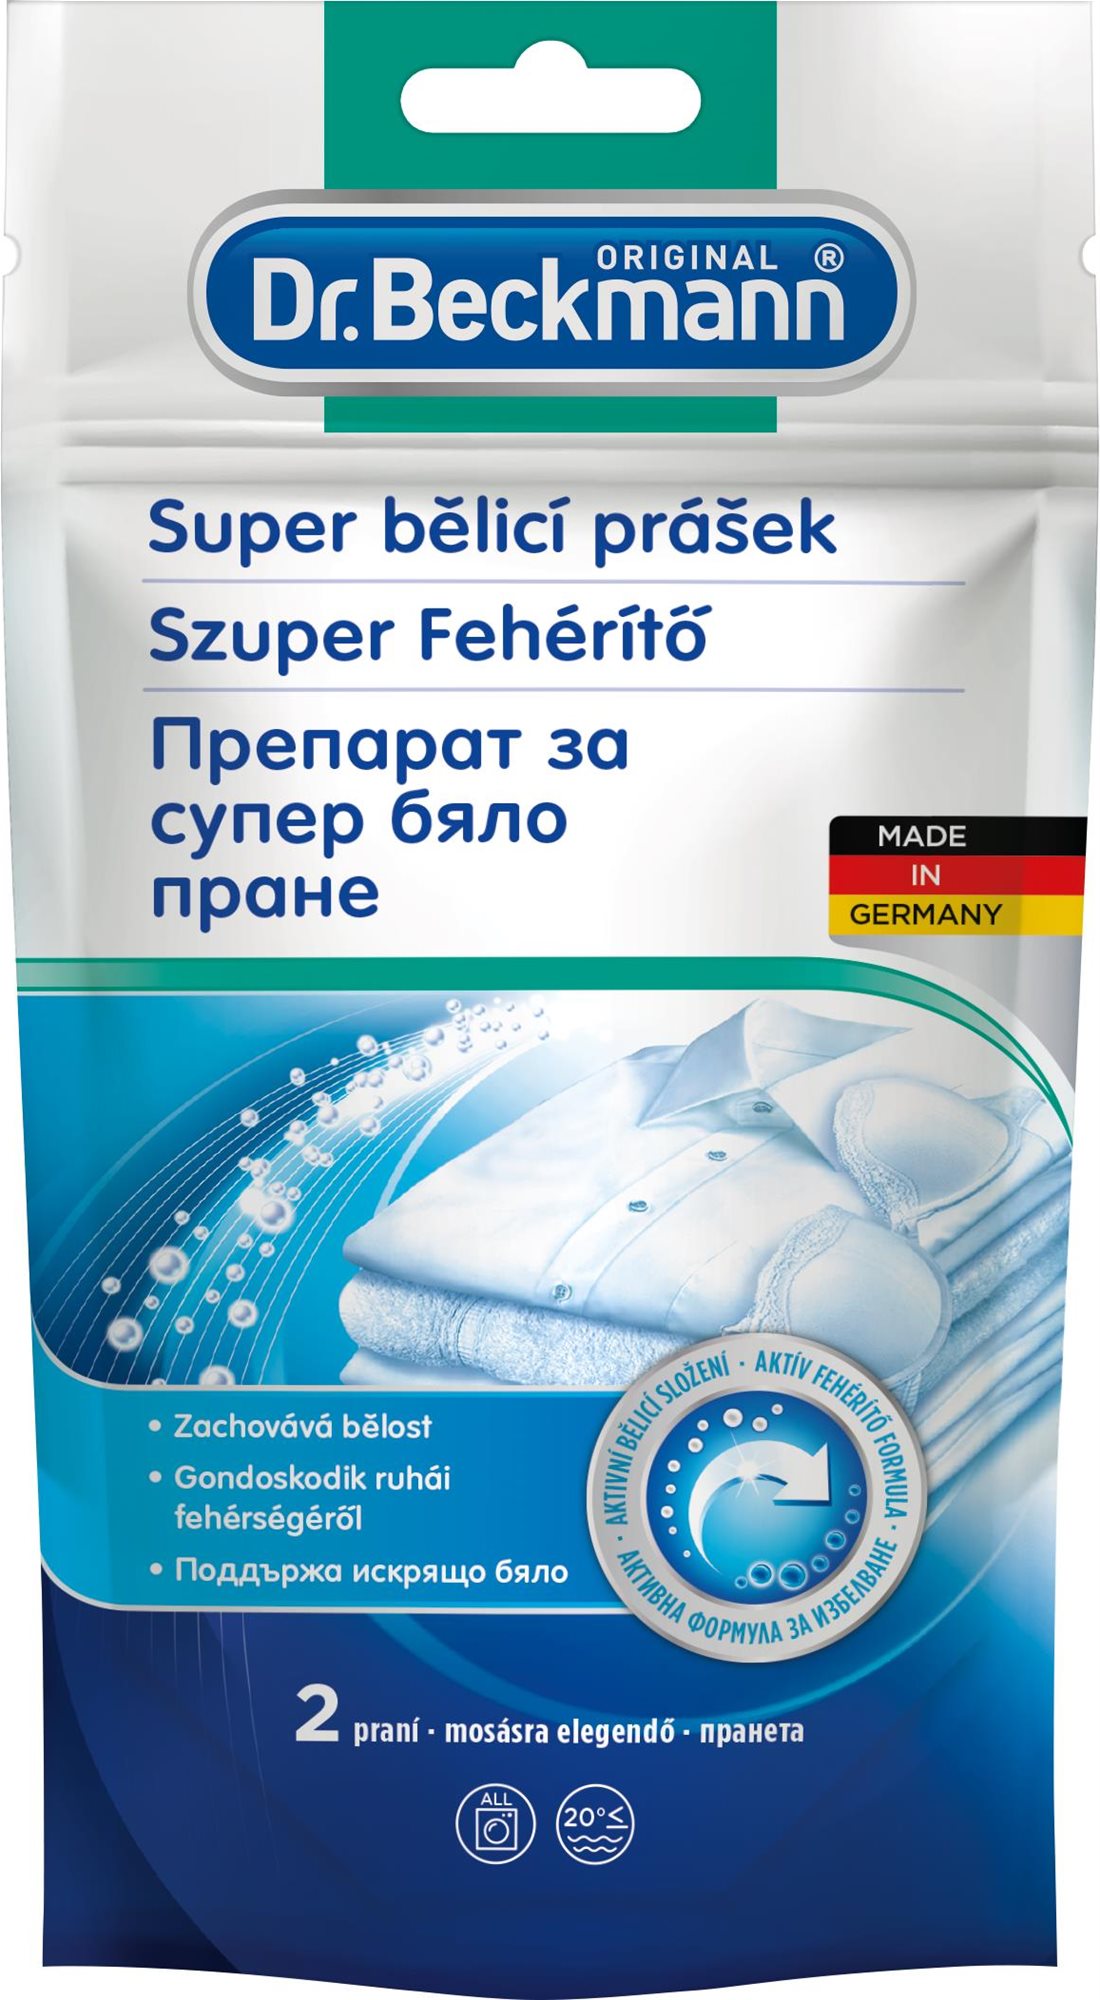 Folttisztító DR. BECKMANN Szuper fehérítőpor 80 g (2 mosás)